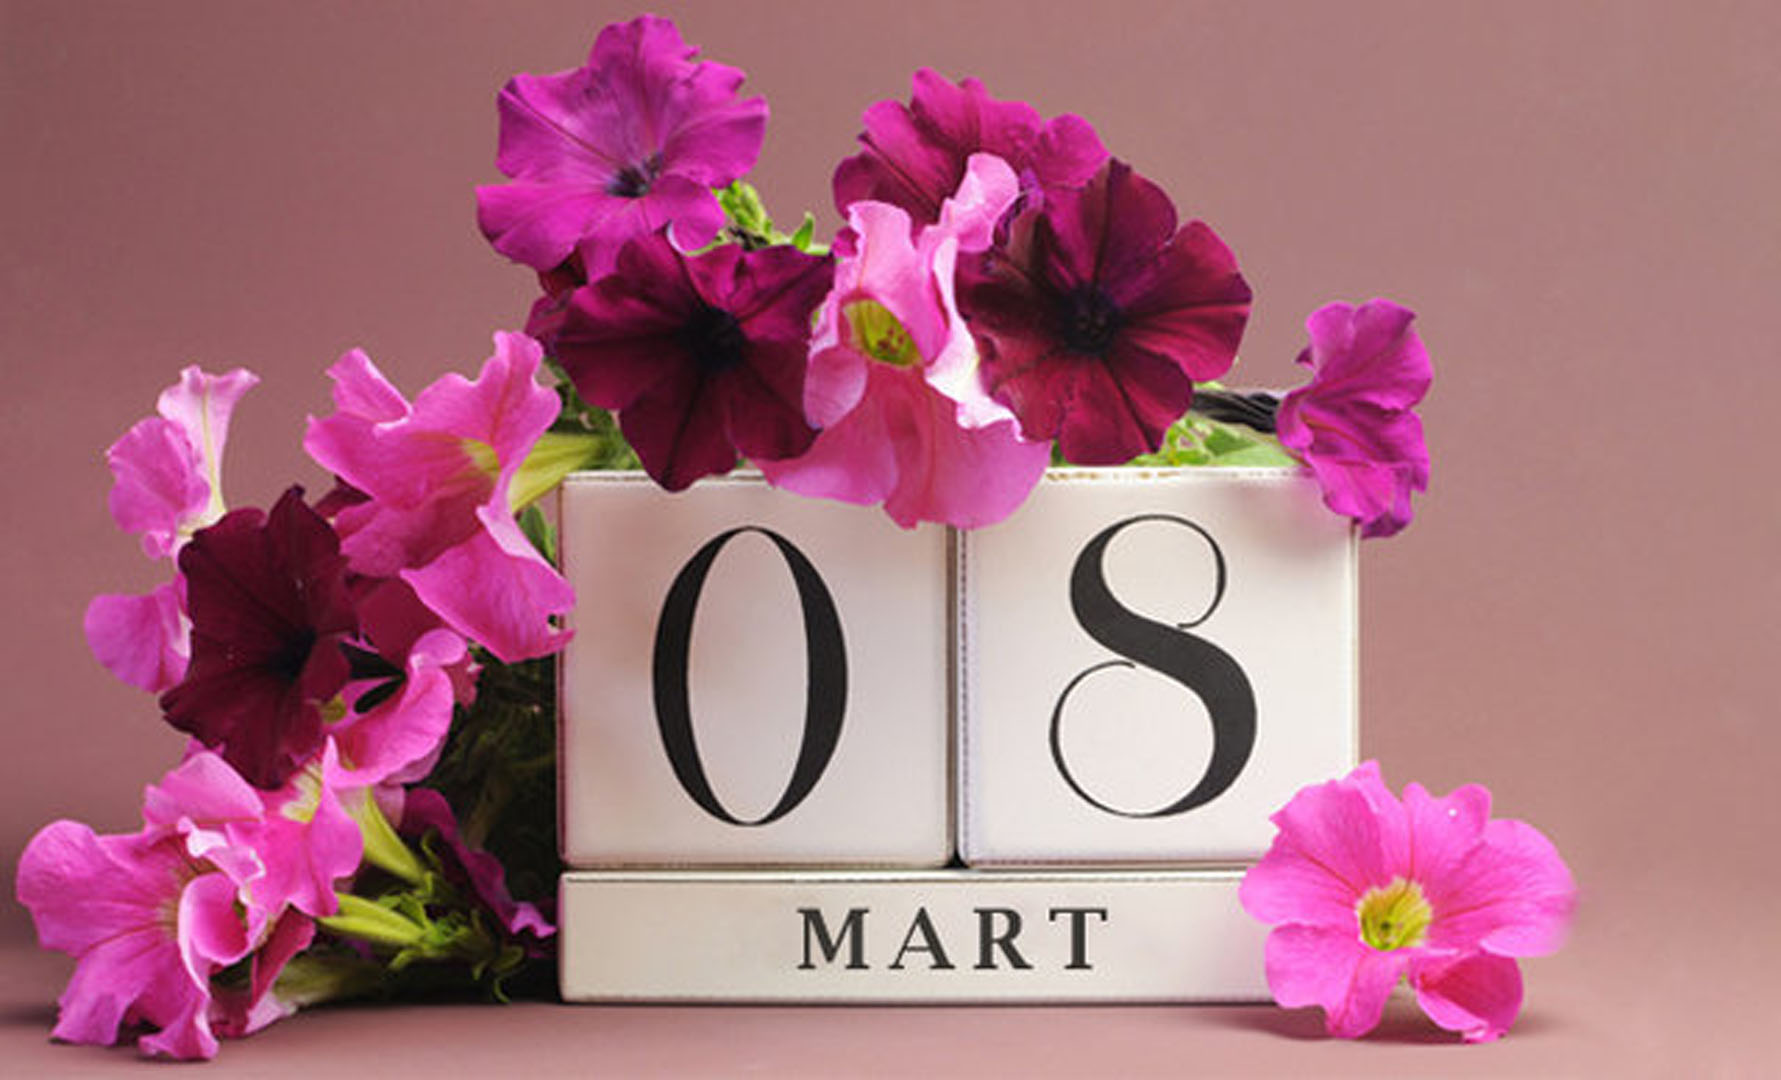 8 Mart Dünya Kadınlar Günü resmi tatil mi 2022? 8 Mart Dünya Kadınlar Günü hangi güne denk geliyor, ne zaman?